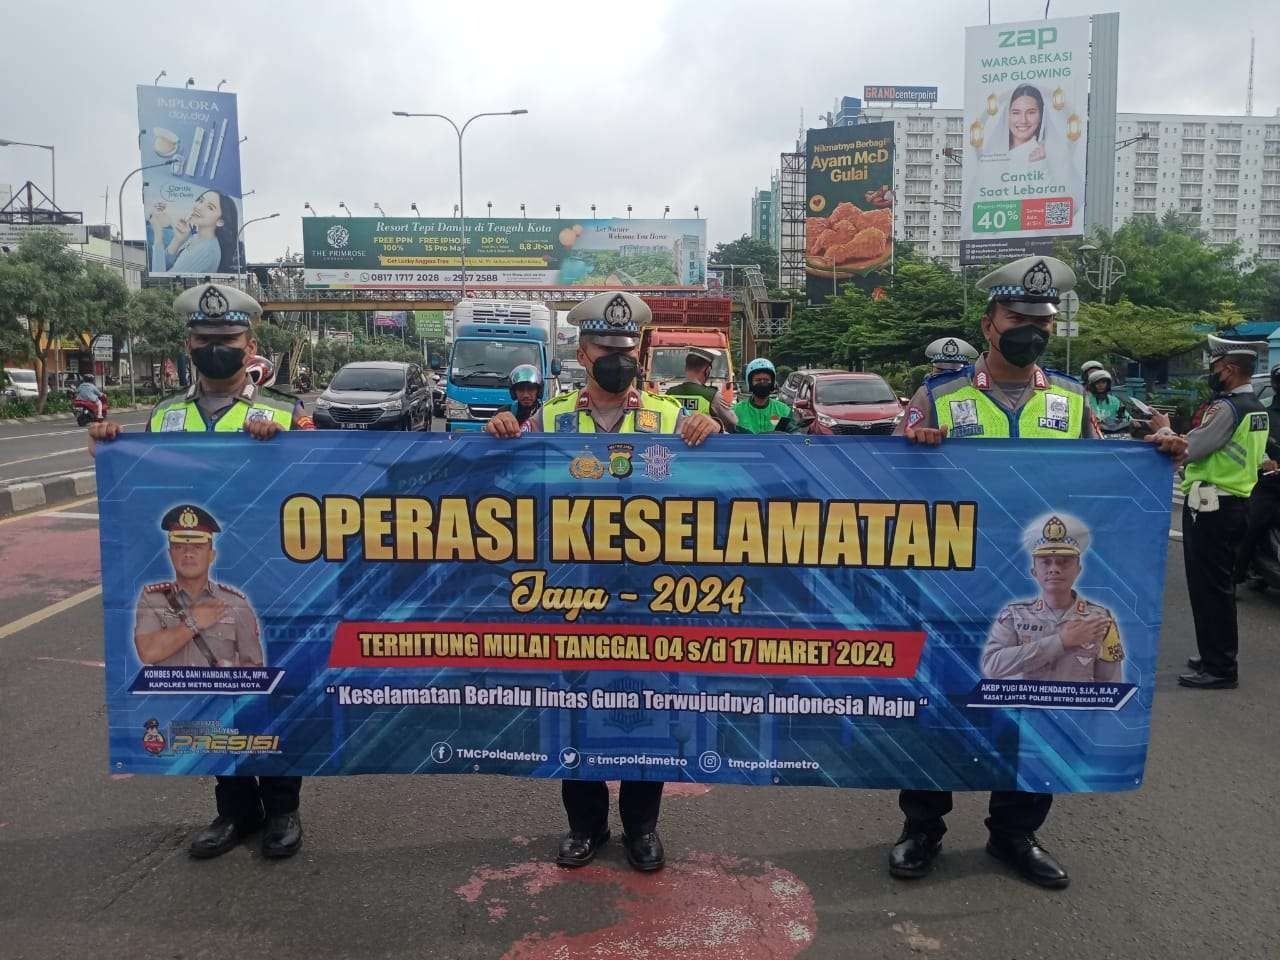 Polisi Jaring Ratusan Pelanggaran Lalin, Pada Operasi Keselamatan Jaya di Bekasi